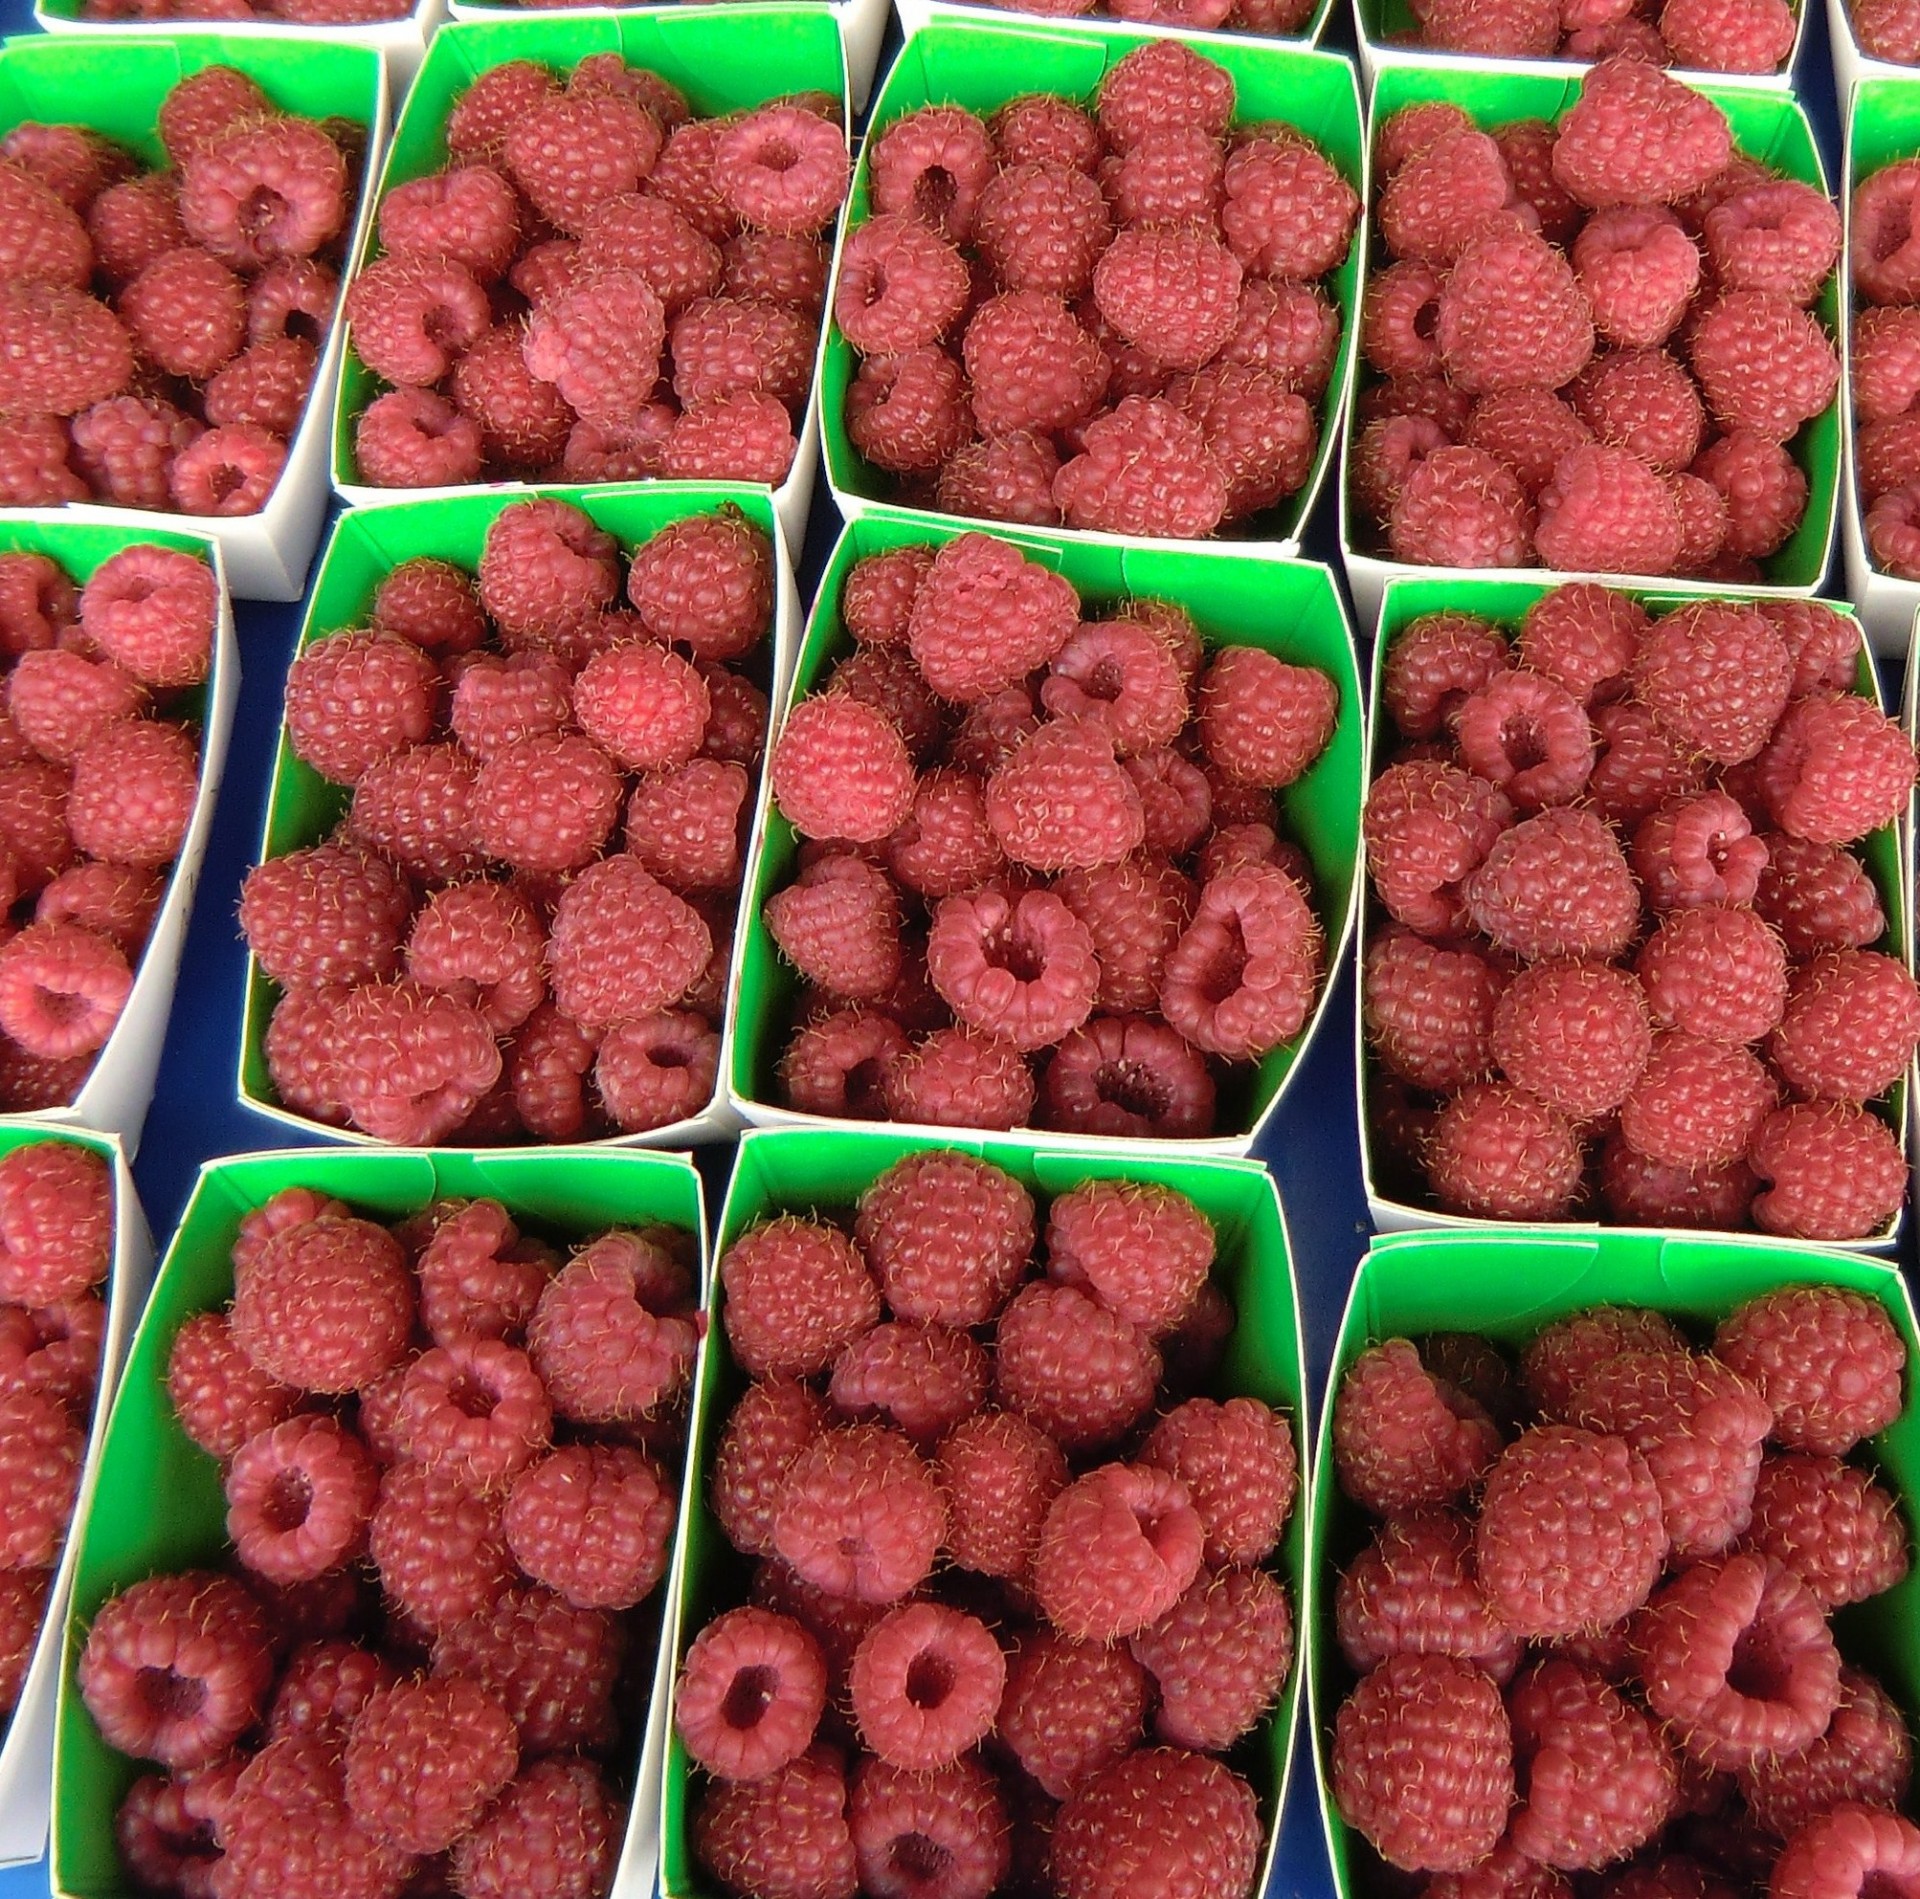 raspberries boxes market free photo